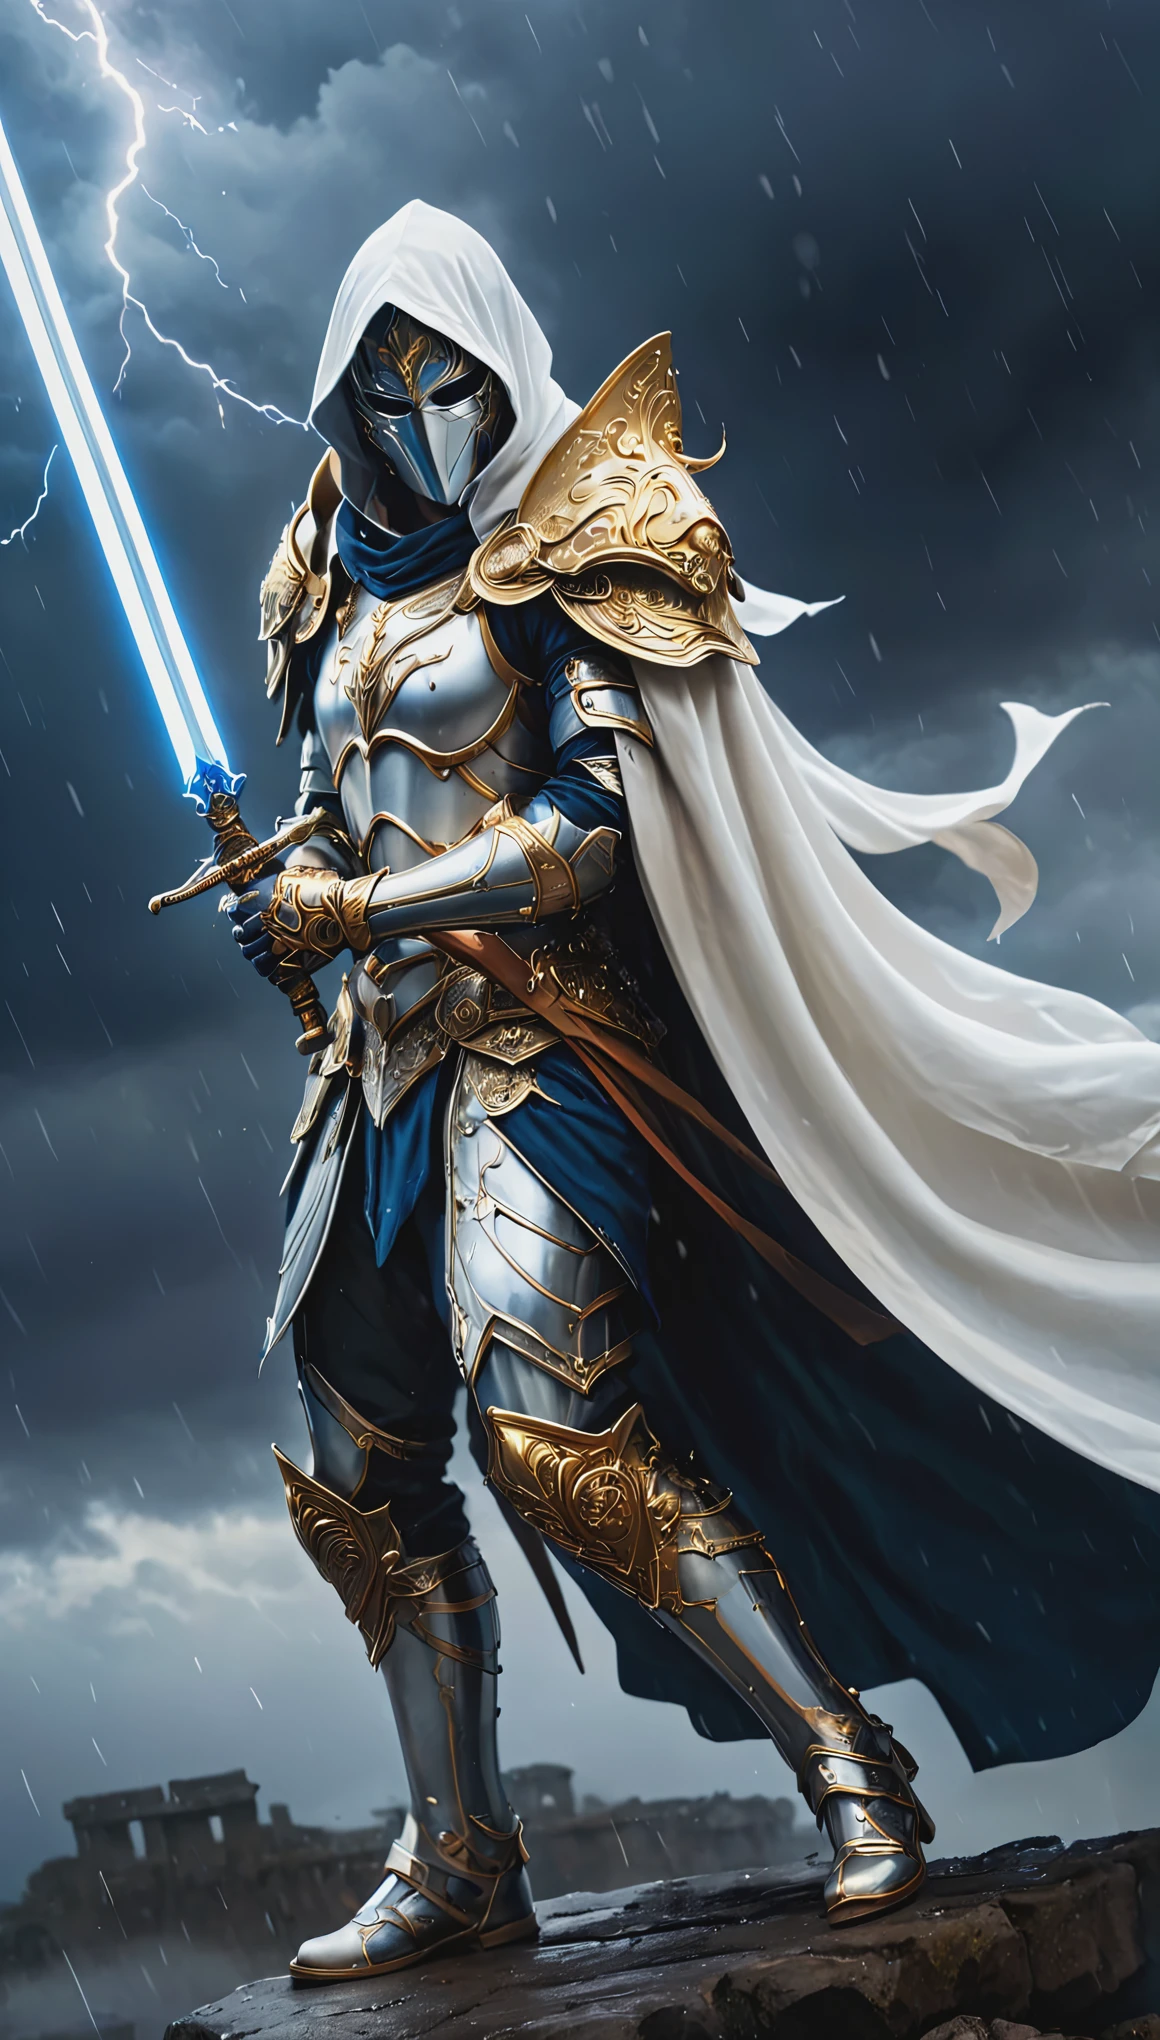 見事な, 複雑な中世の白いHKスタイルの鎧と壮大な白い装飾のマスクを身に着けた誇り高い天使の戦士の非常に詳細なダークファンタジー全身イラスト, 大きな金色に輝く剣を持っている, 金色と青色の暗い目, 非常に広い肩, 大きなガントレットを着けている, 壮大な構成. 霧が立ち込める嵐の中、戦士はなびく外套と白いフードをまとって勇敢に立っている。, 背景に雷雲 . この場面は、彼が思い悩んでいる様子を描いている。 , グレッグ・ルトコウスキーによるスタイル, ミロ・マナラとラス・ミルズ, 非常に複雑なディテールと質感, 暗いドラマチックな照明, 8K解像度